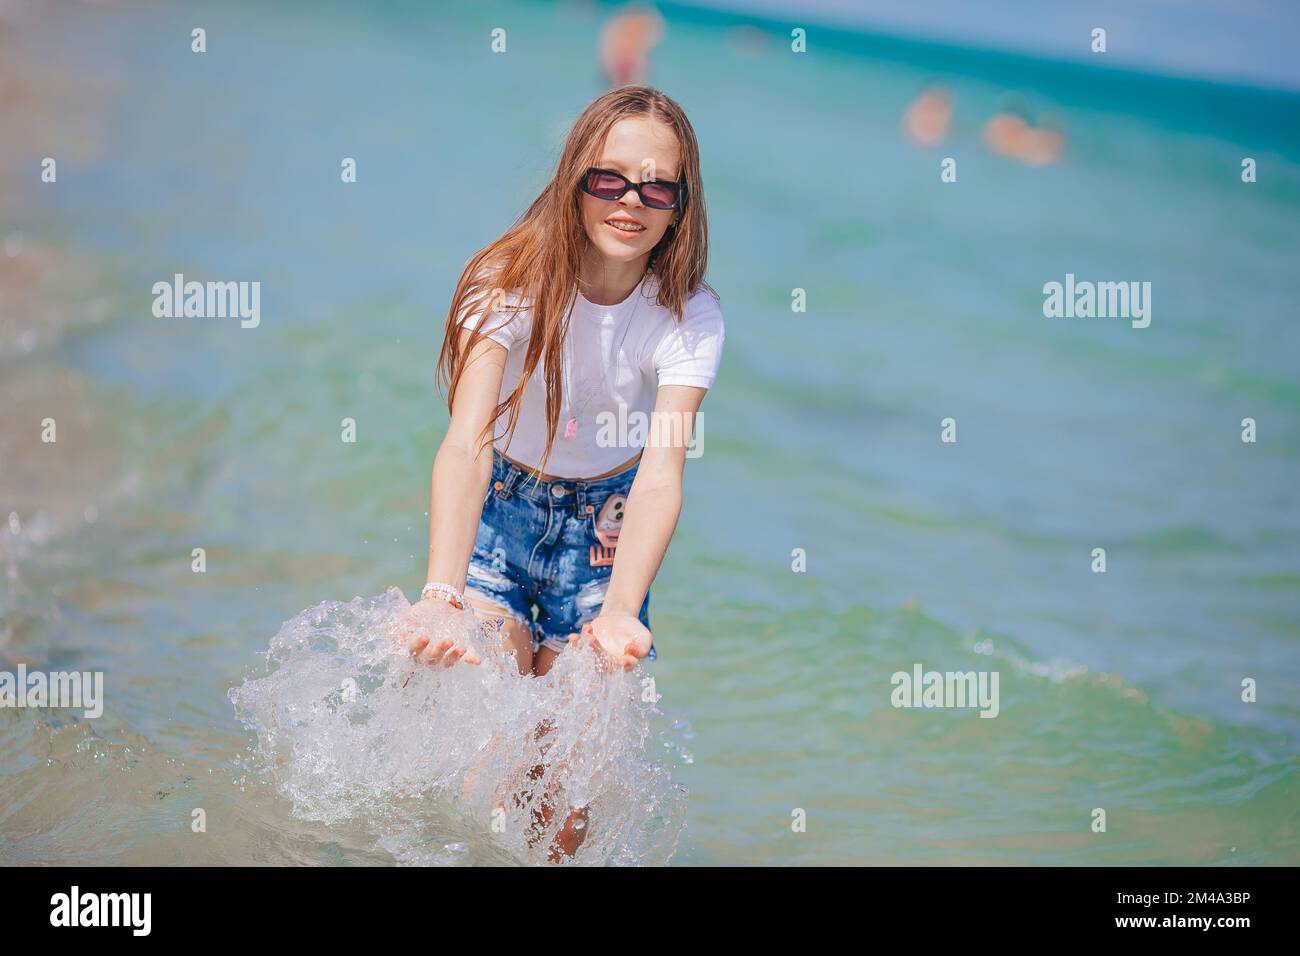 Ein kleines glückliches Mädchen, das in klarem türkisfarbenem Wasser spritzt und läuft Stockfoto